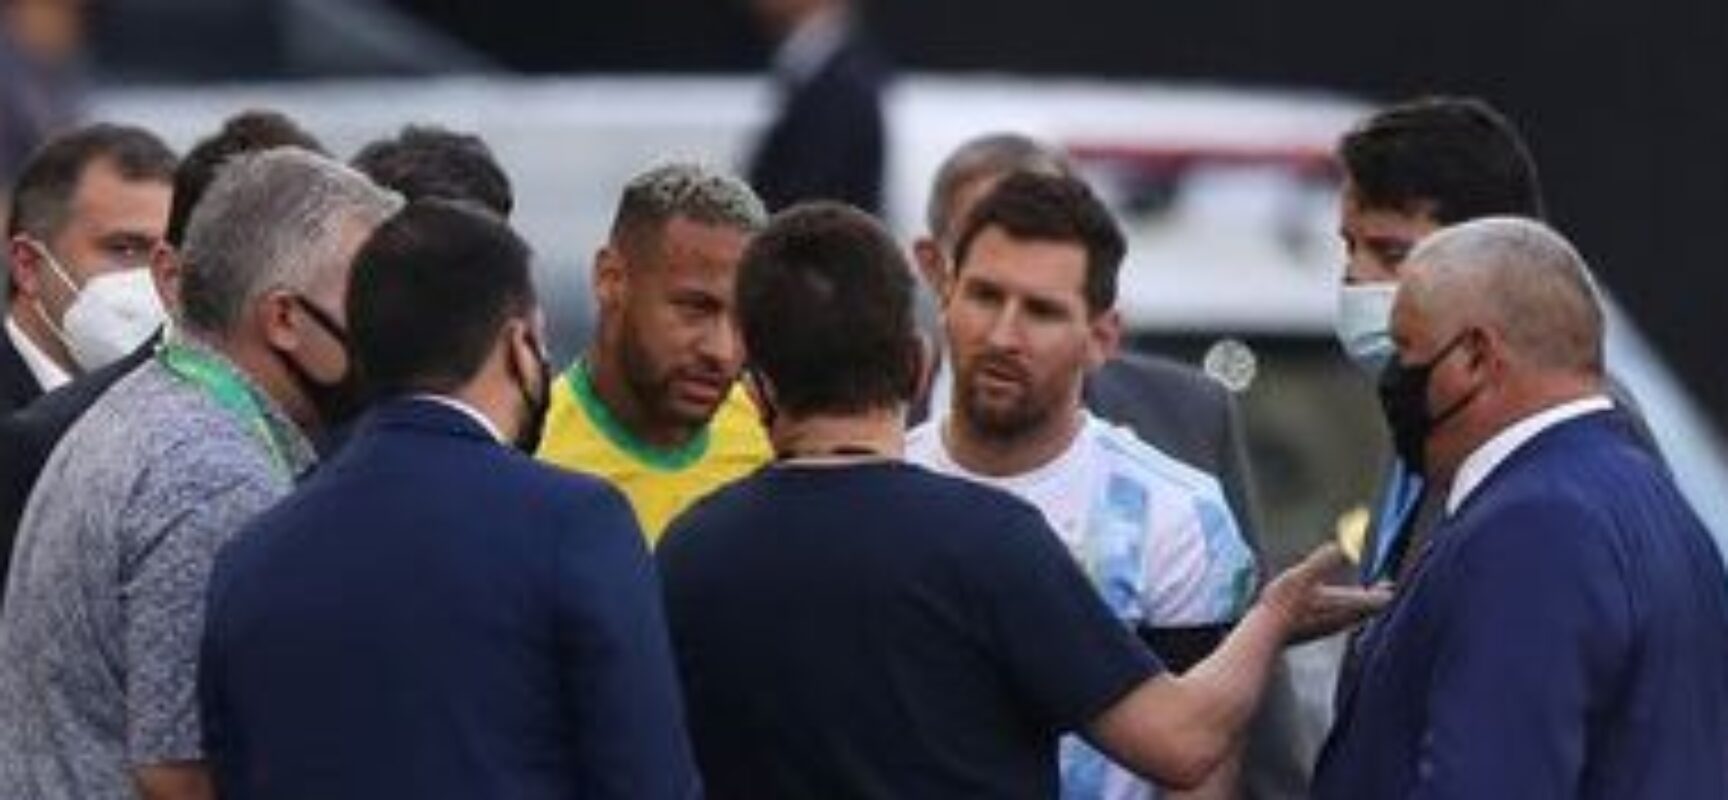 Fifa determina que duelo Brasil x Argentina ocorra em novo local